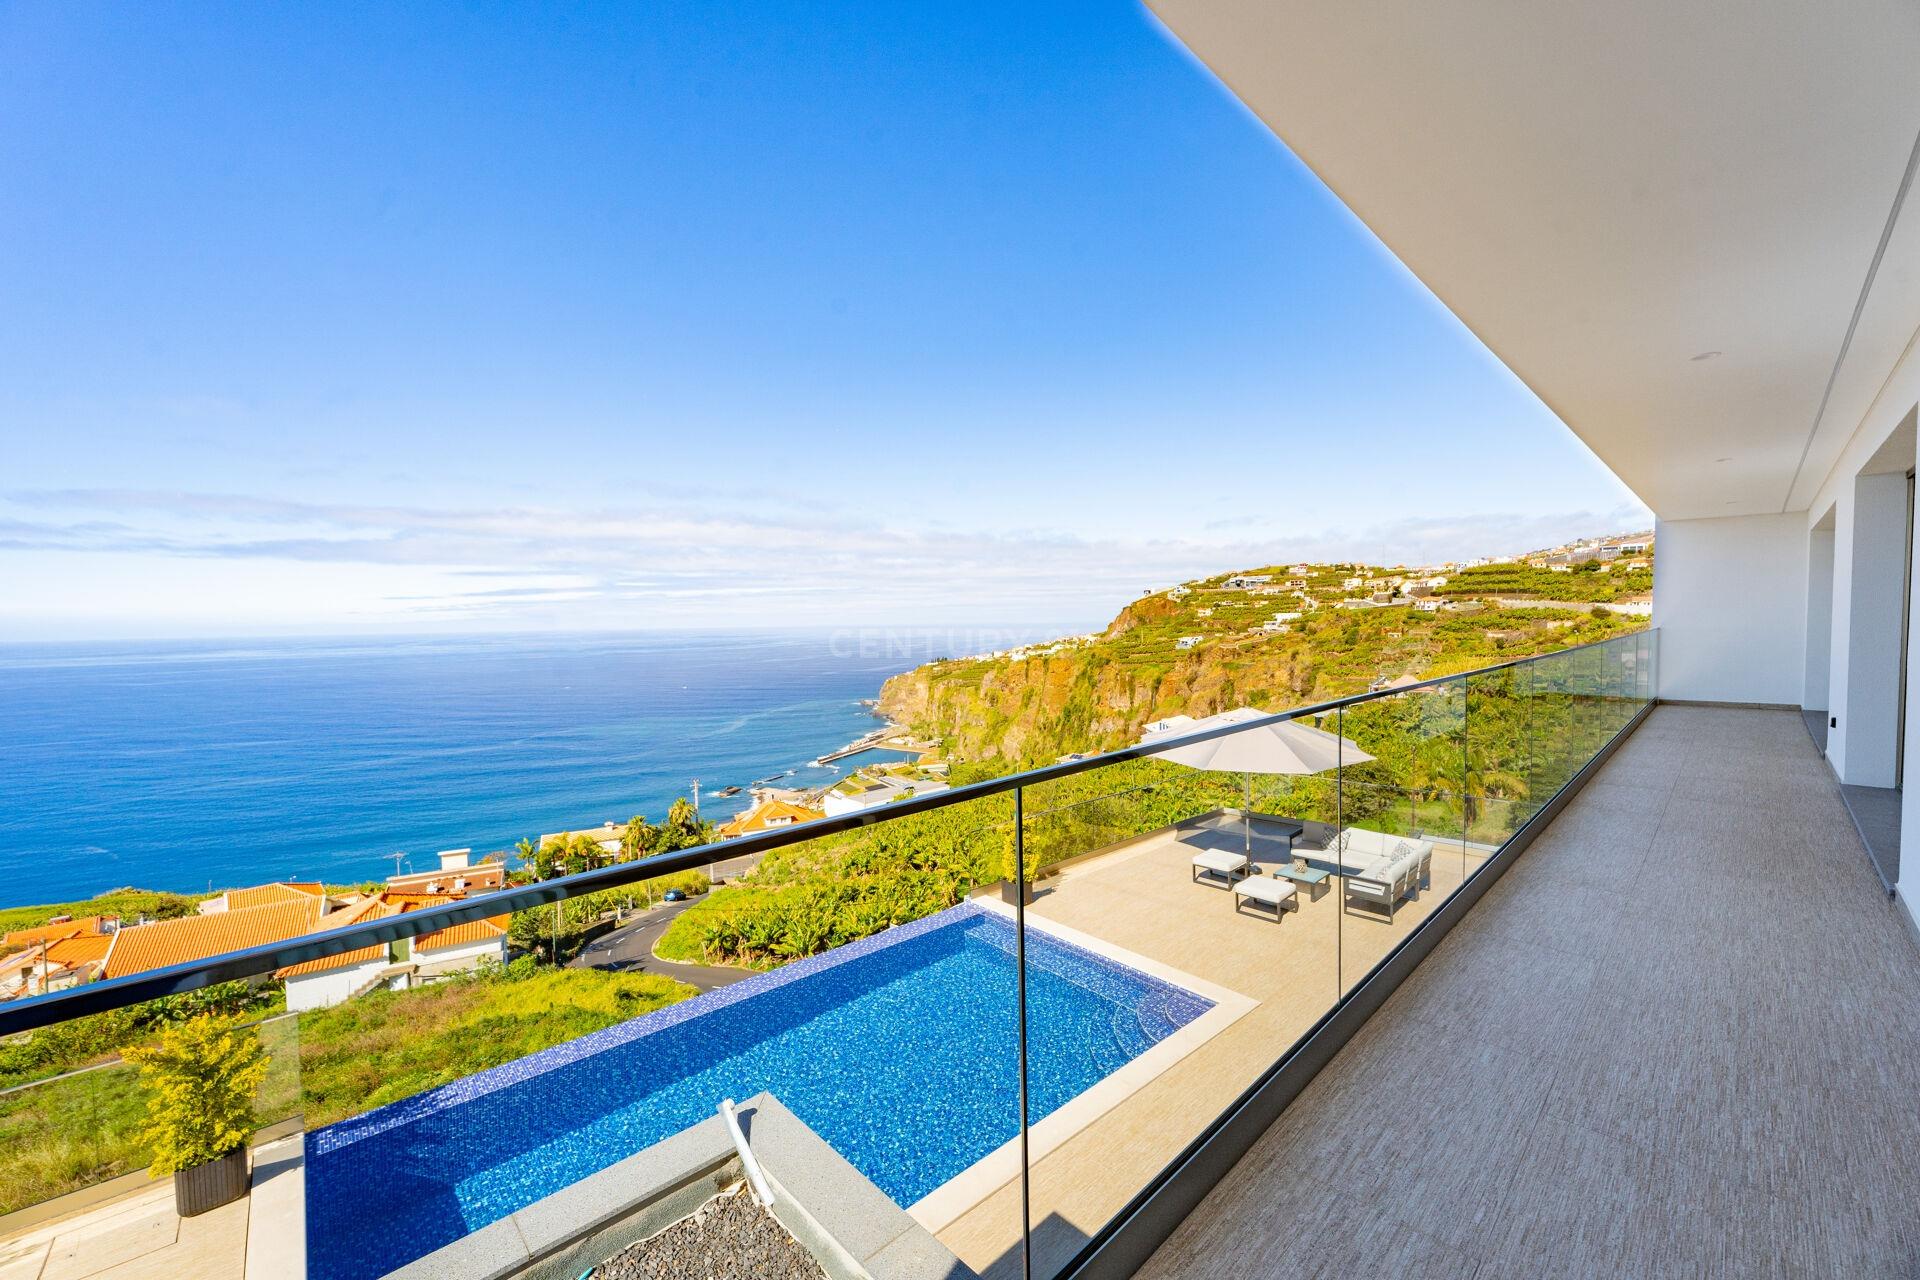 Lujosa villa de 3+2 dormitorios con piscina infinita y vistas espectaculares - Ribeira Brava, Madeir